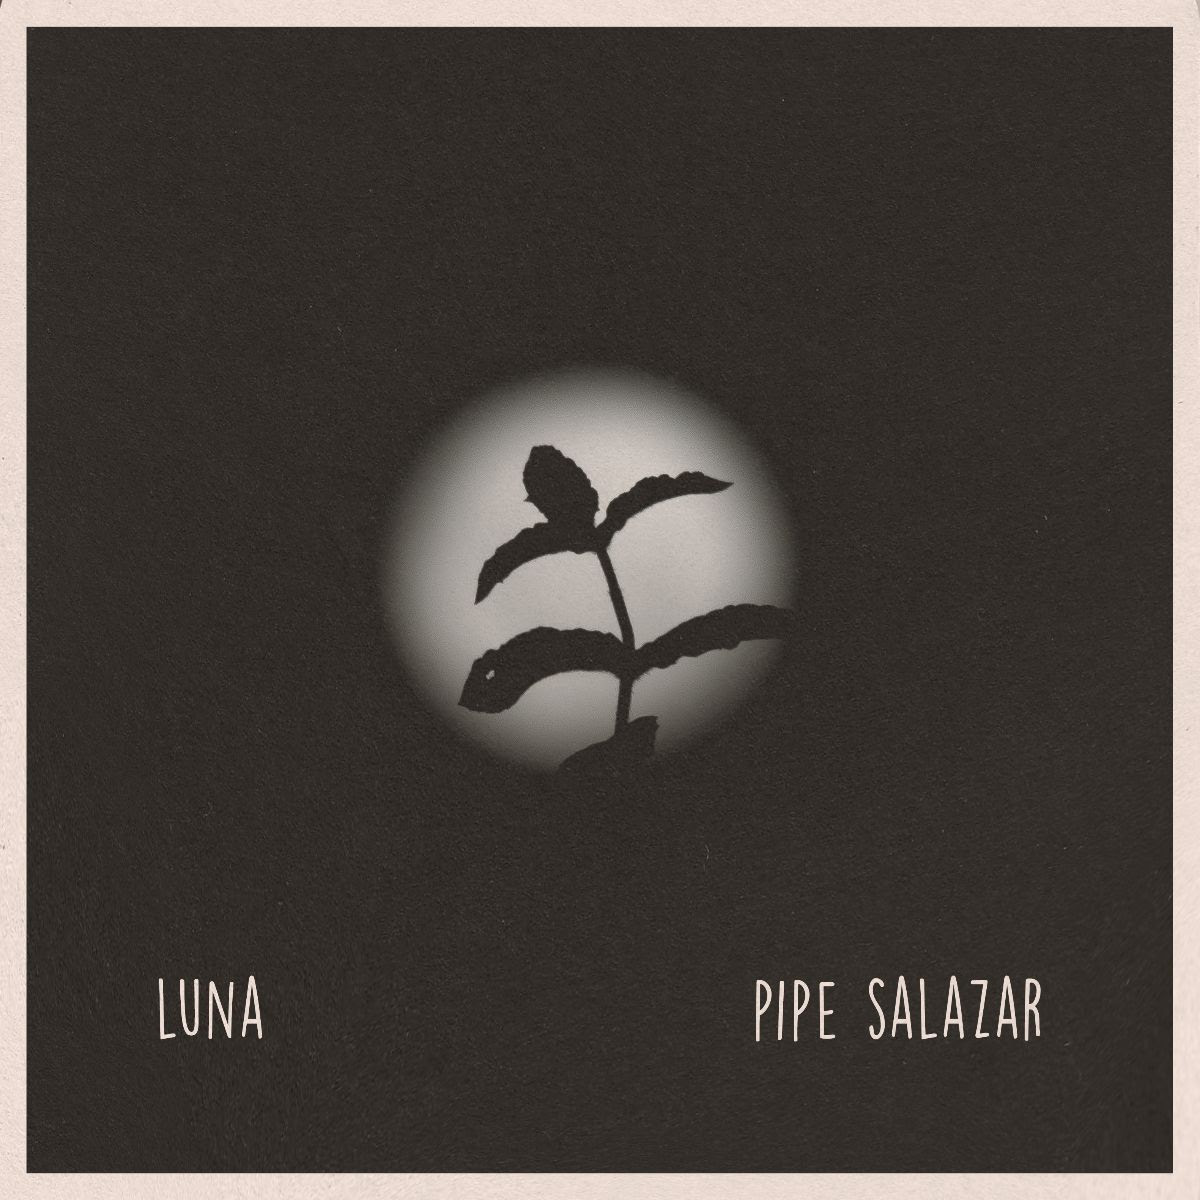 Pipe Salazar estrena su primer sencillo «Luna»